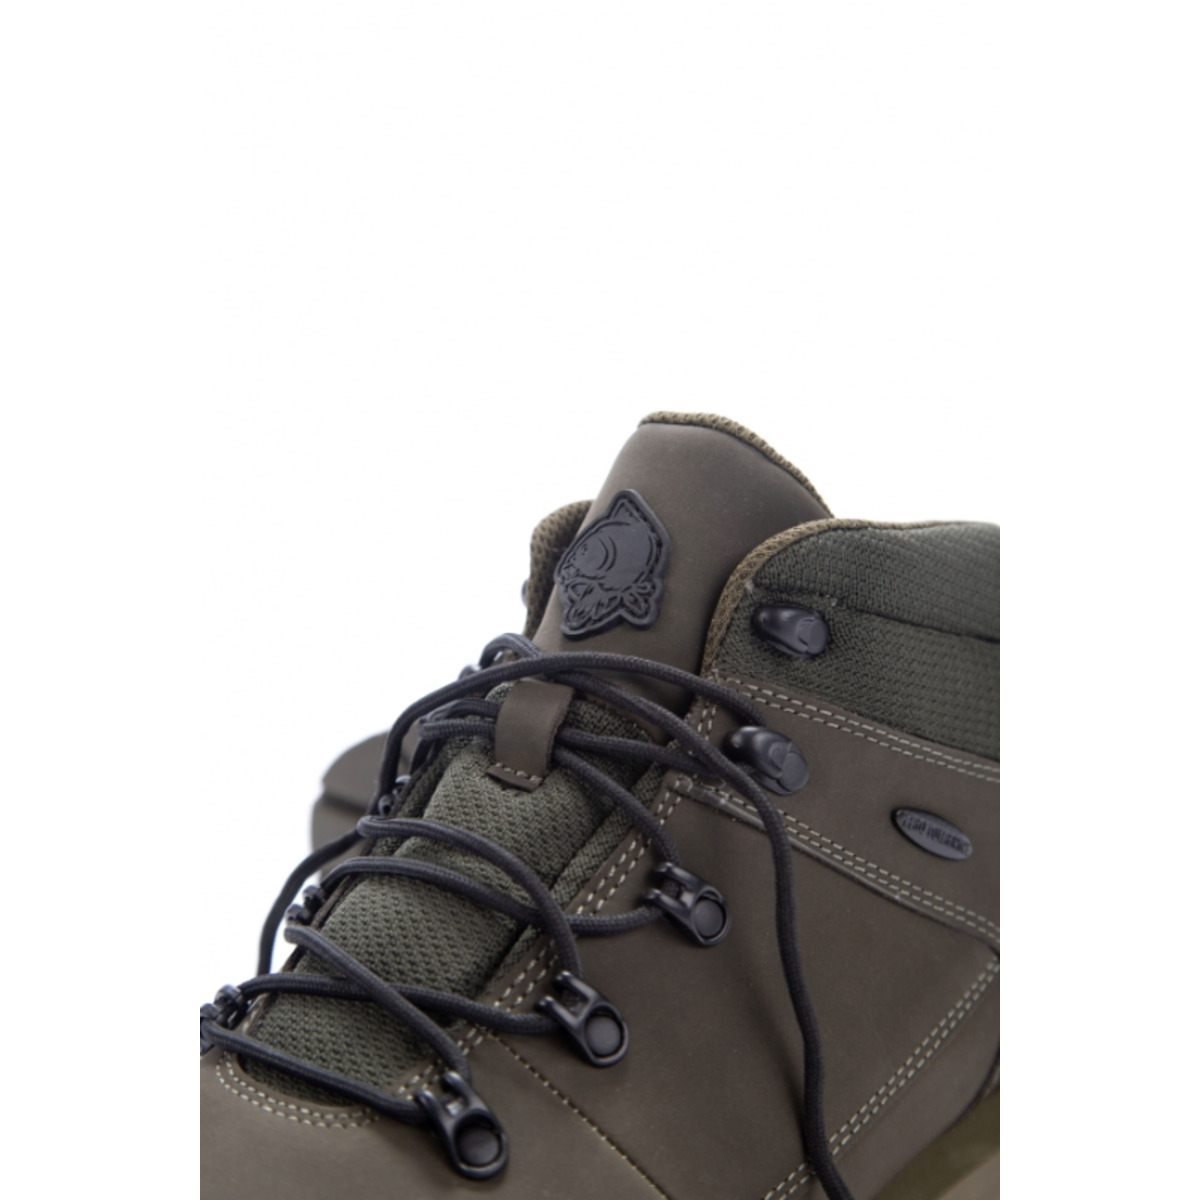 Nash Zt Trail Boots - Size 9 (43)